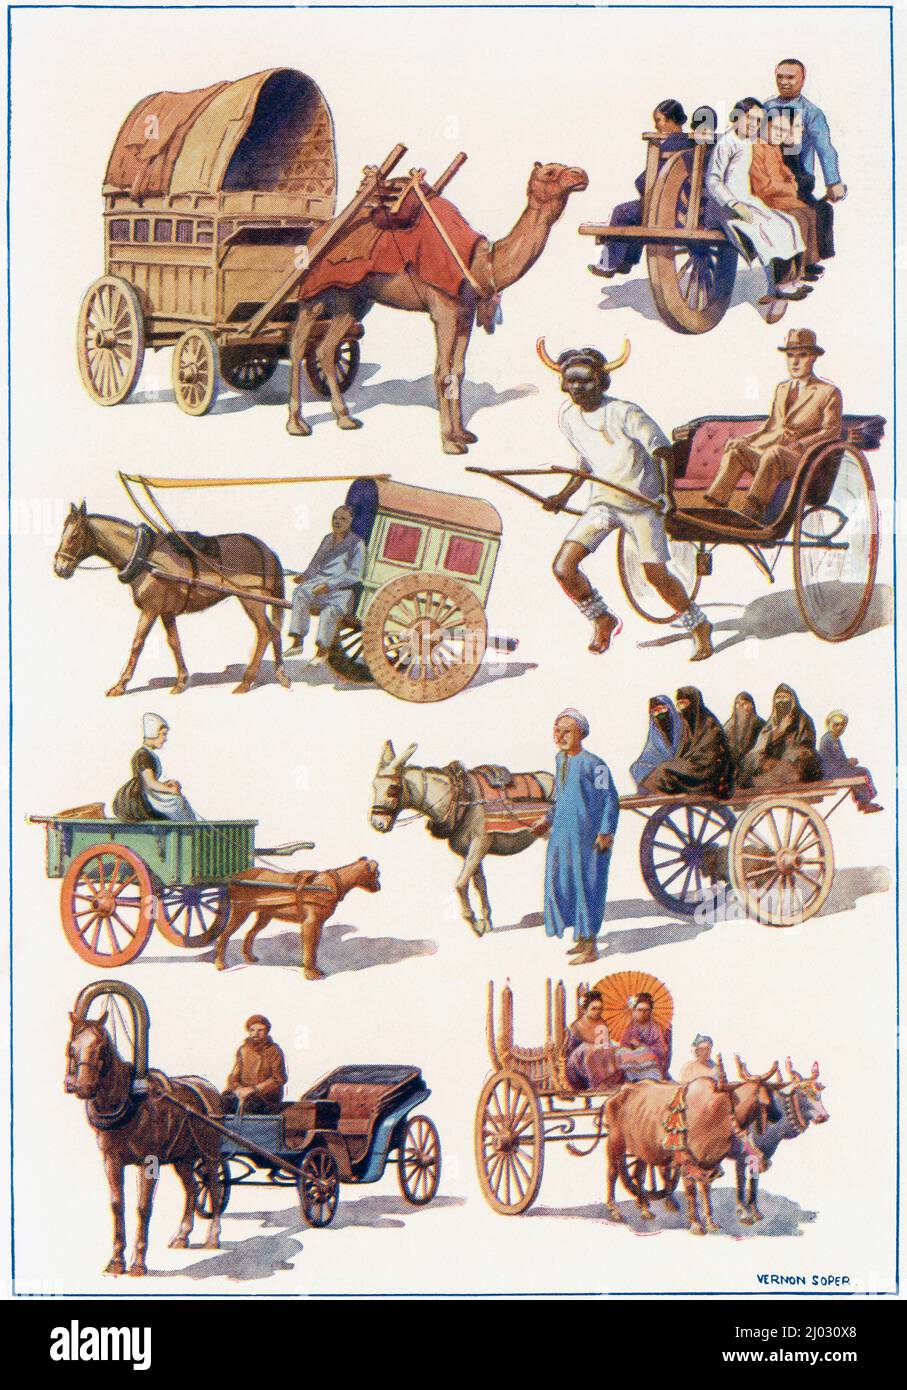 Vehículos del mundo - De izquierda a derecha - Cart de camello indio, carretilla china de una rueda, carrito de inclinación chino, rickshaw sudafricano, carrito de perro holandés, Carro egipcio, droshky ruso, carro birmano. Del País de las Maravillas del Conocimiento, publicado c.1930 Foto de stock